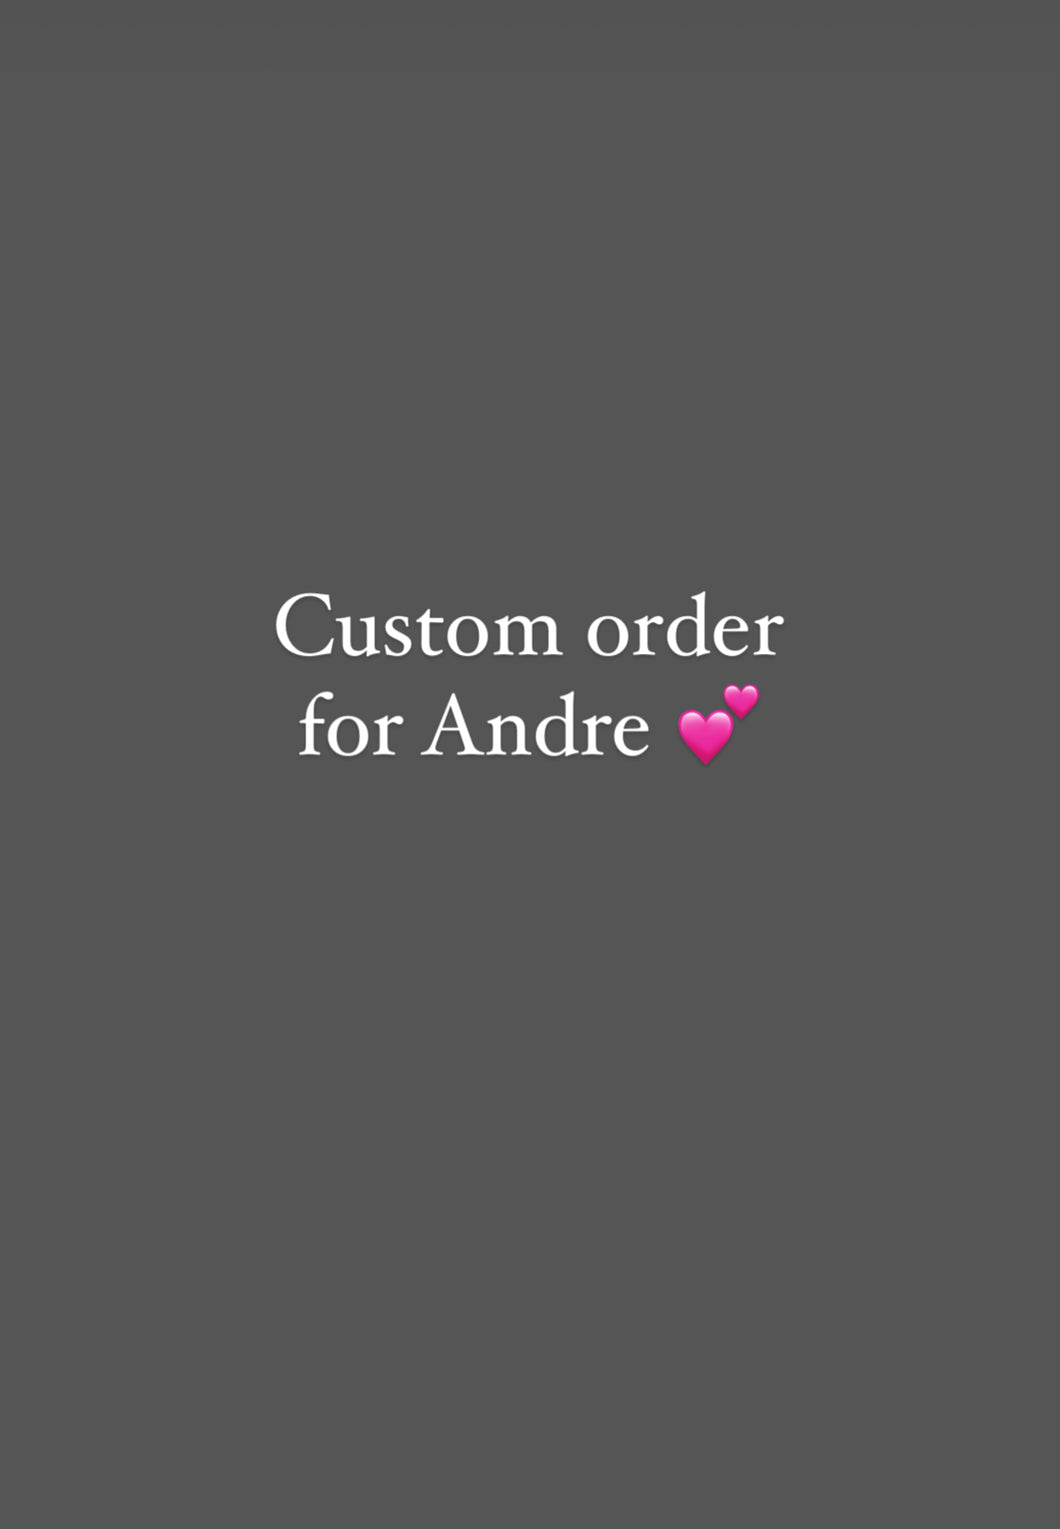 Custom order for Andre